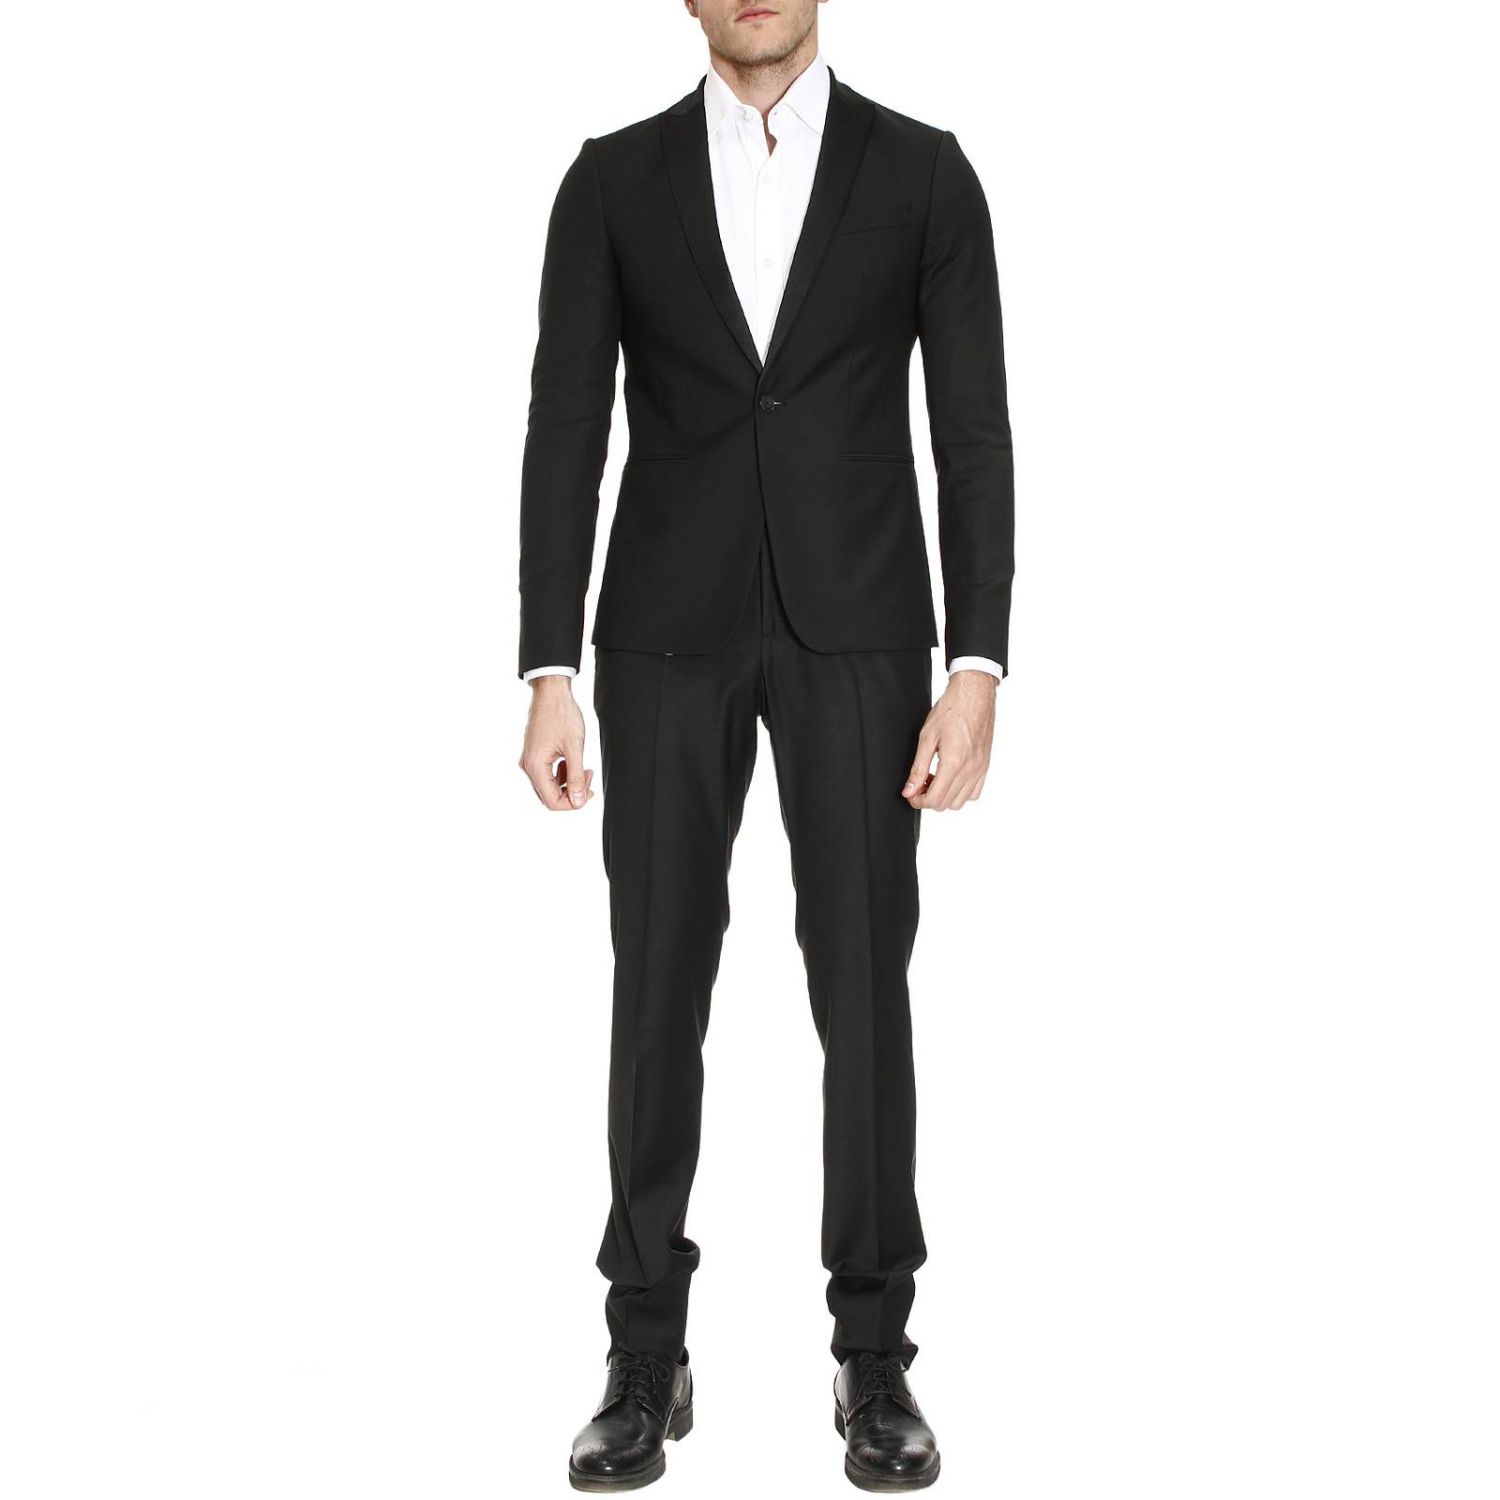 Patrizia Pepe Outlet: Suits men | Suit Patrizia Pepe Men Black | Suit ...